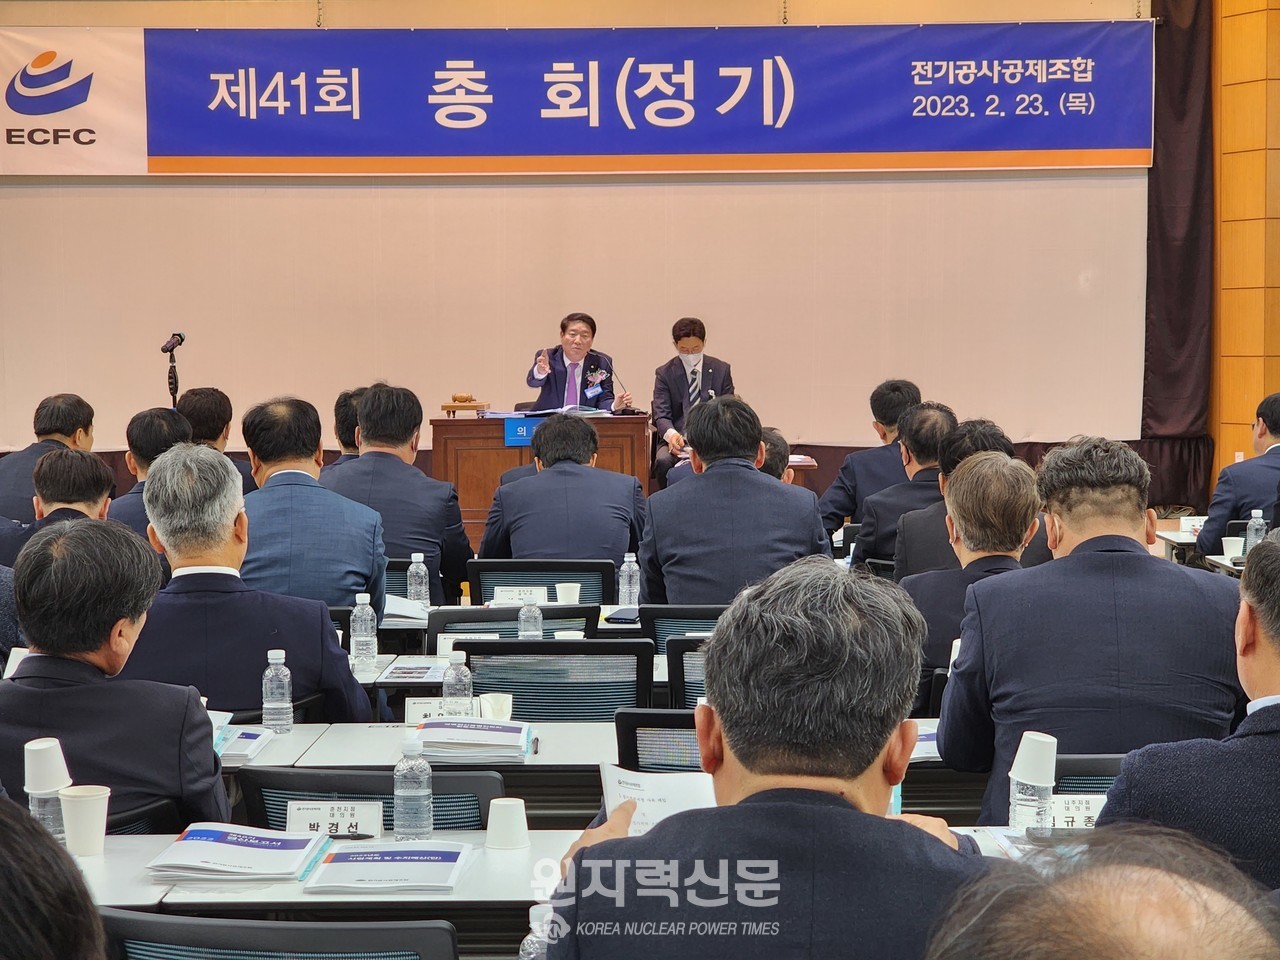 전기공사공제조합은 23일 조합 15층 대회의실에서 ‘제41회 정기총회’를 개최했다.    사진 = 이석우 기자